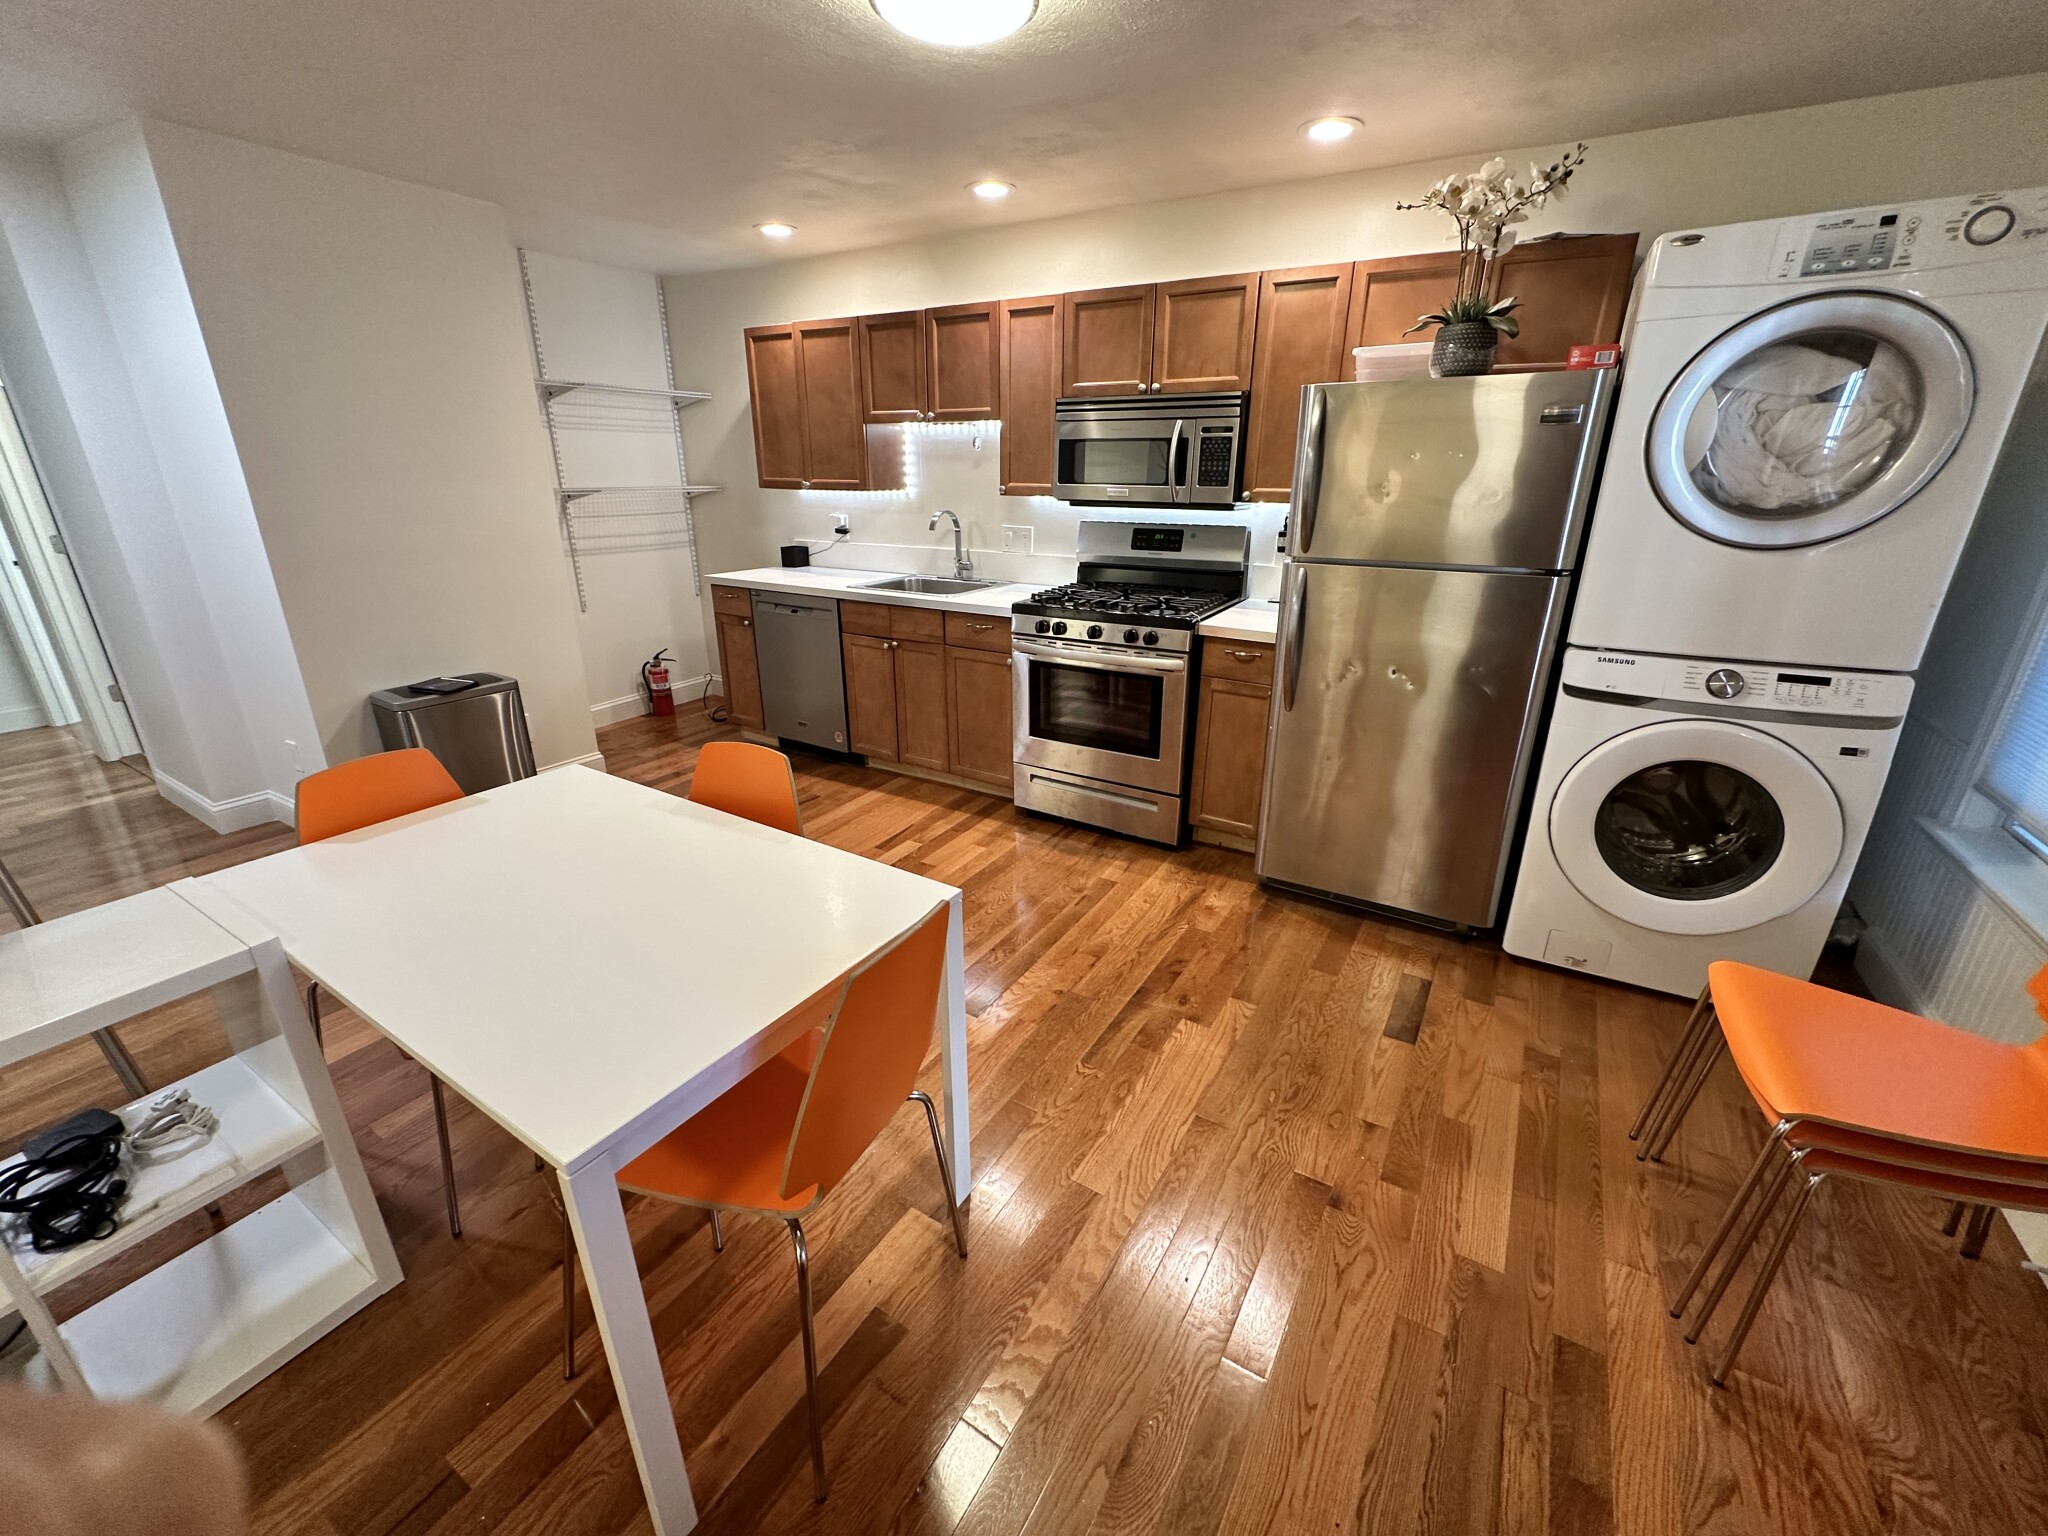 Photos of apartment on Emerson,Boston MA 02127